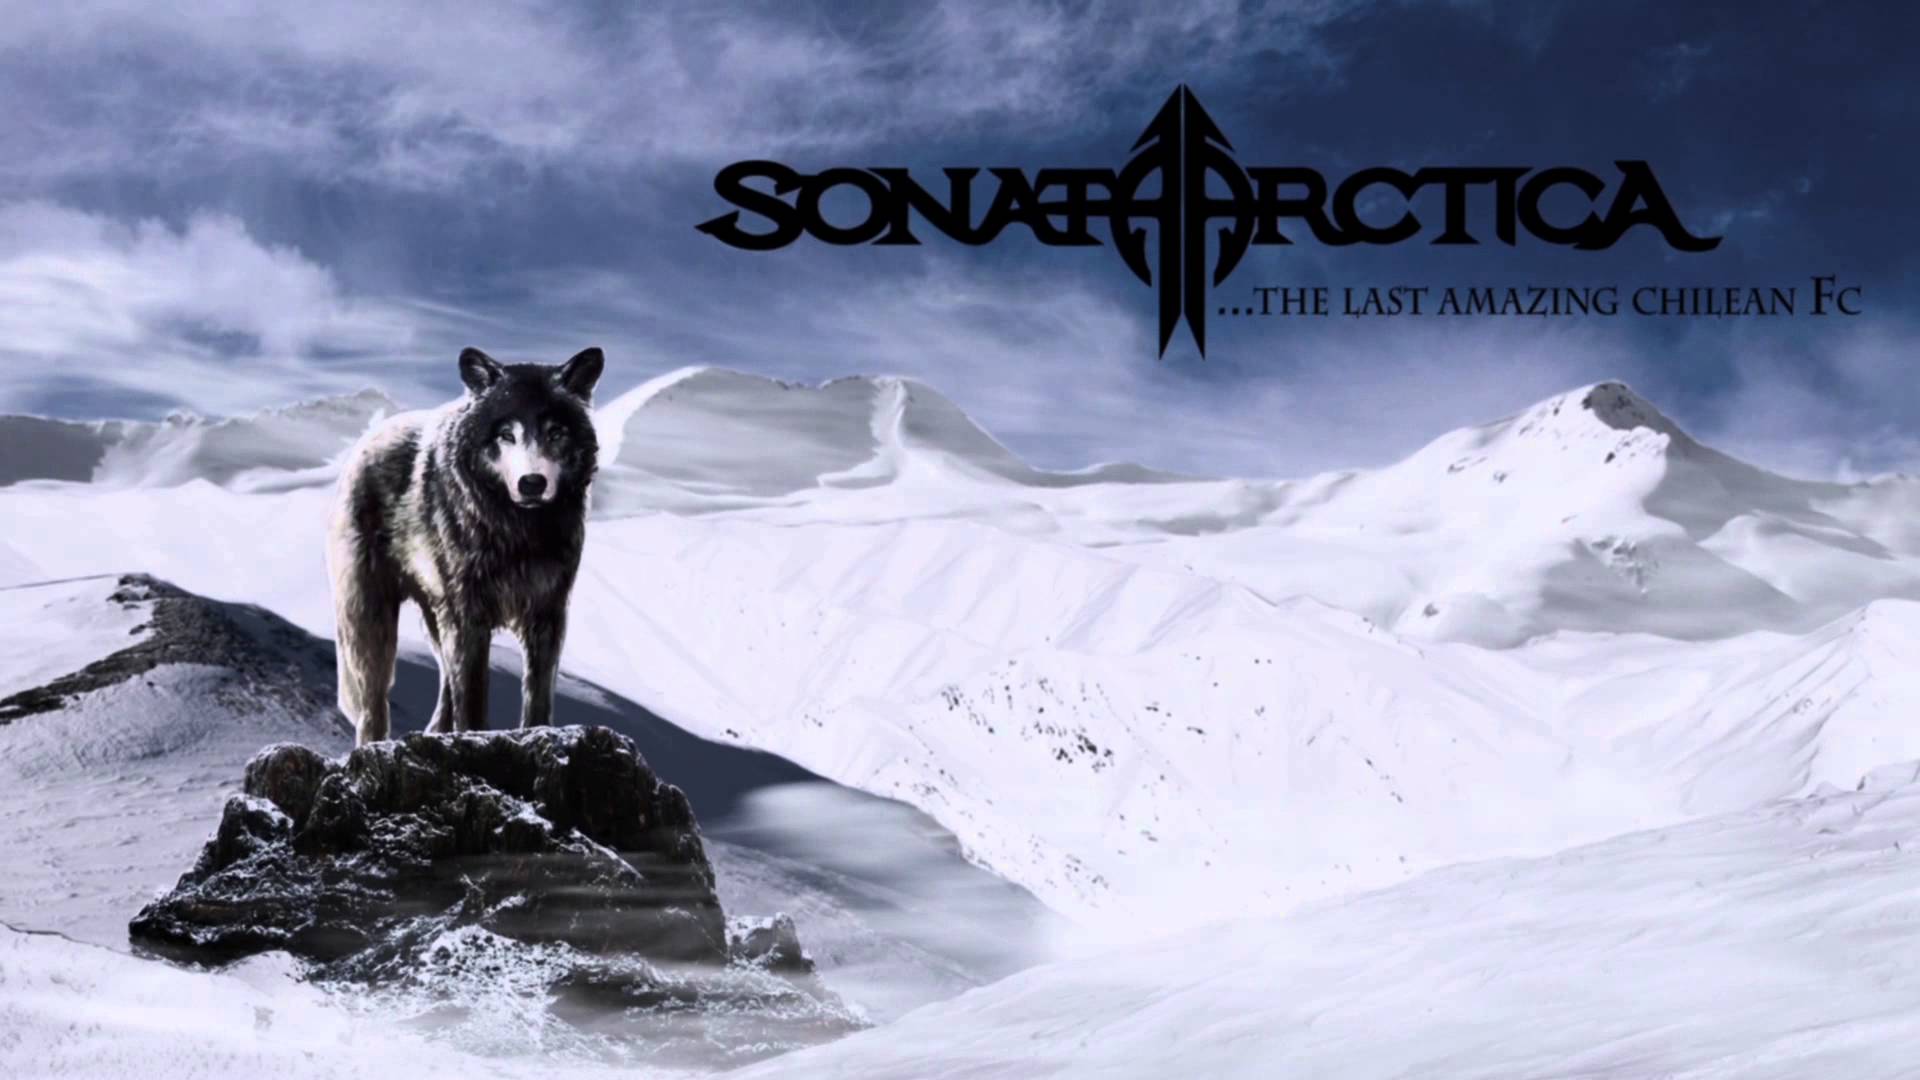 Fan Web Sonata Arctica Chile